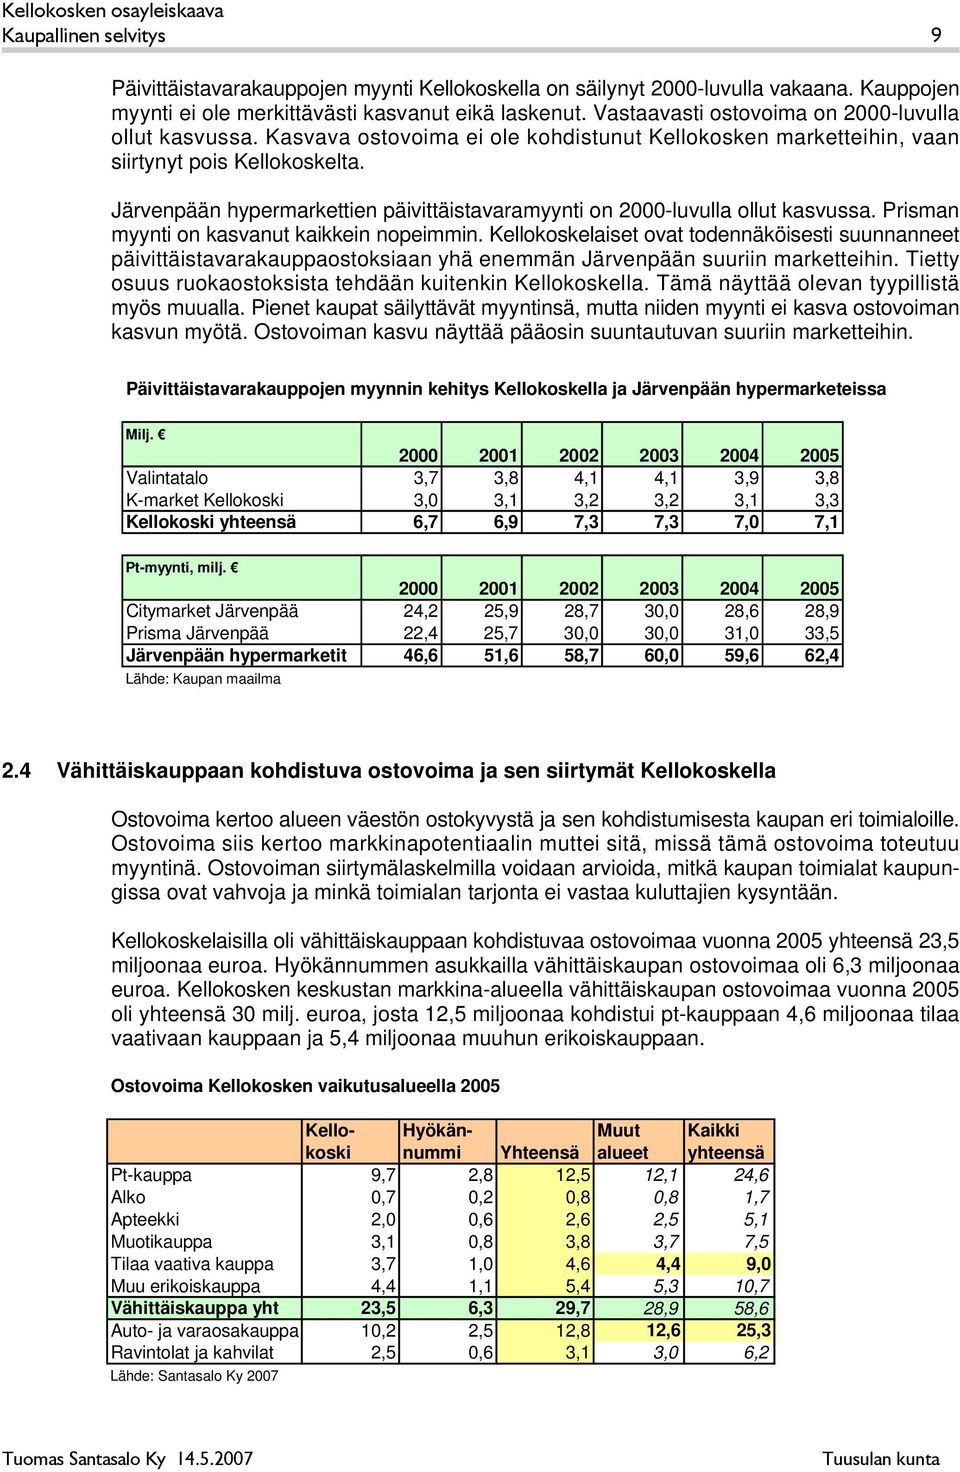 Järvenpään hypermettien päivittäistavamyynti on 2000-luvulla ollut asvussa. Prisman myynti on asvanut aiein nopeimmin.